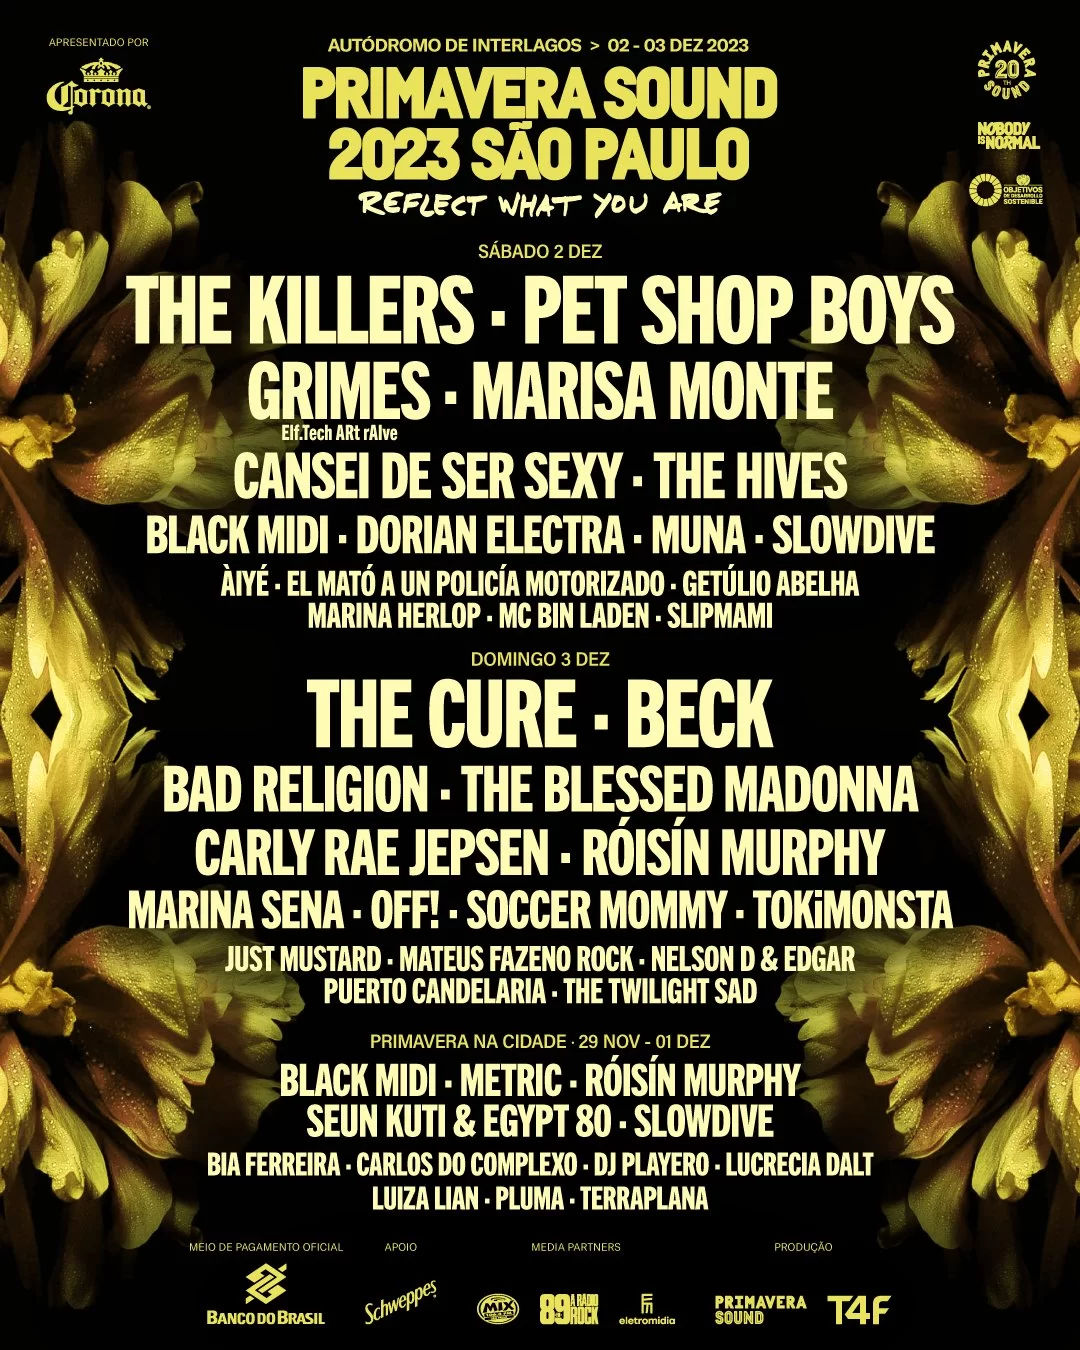 Line Up of the Primavera Sound 2023 São Paulo event